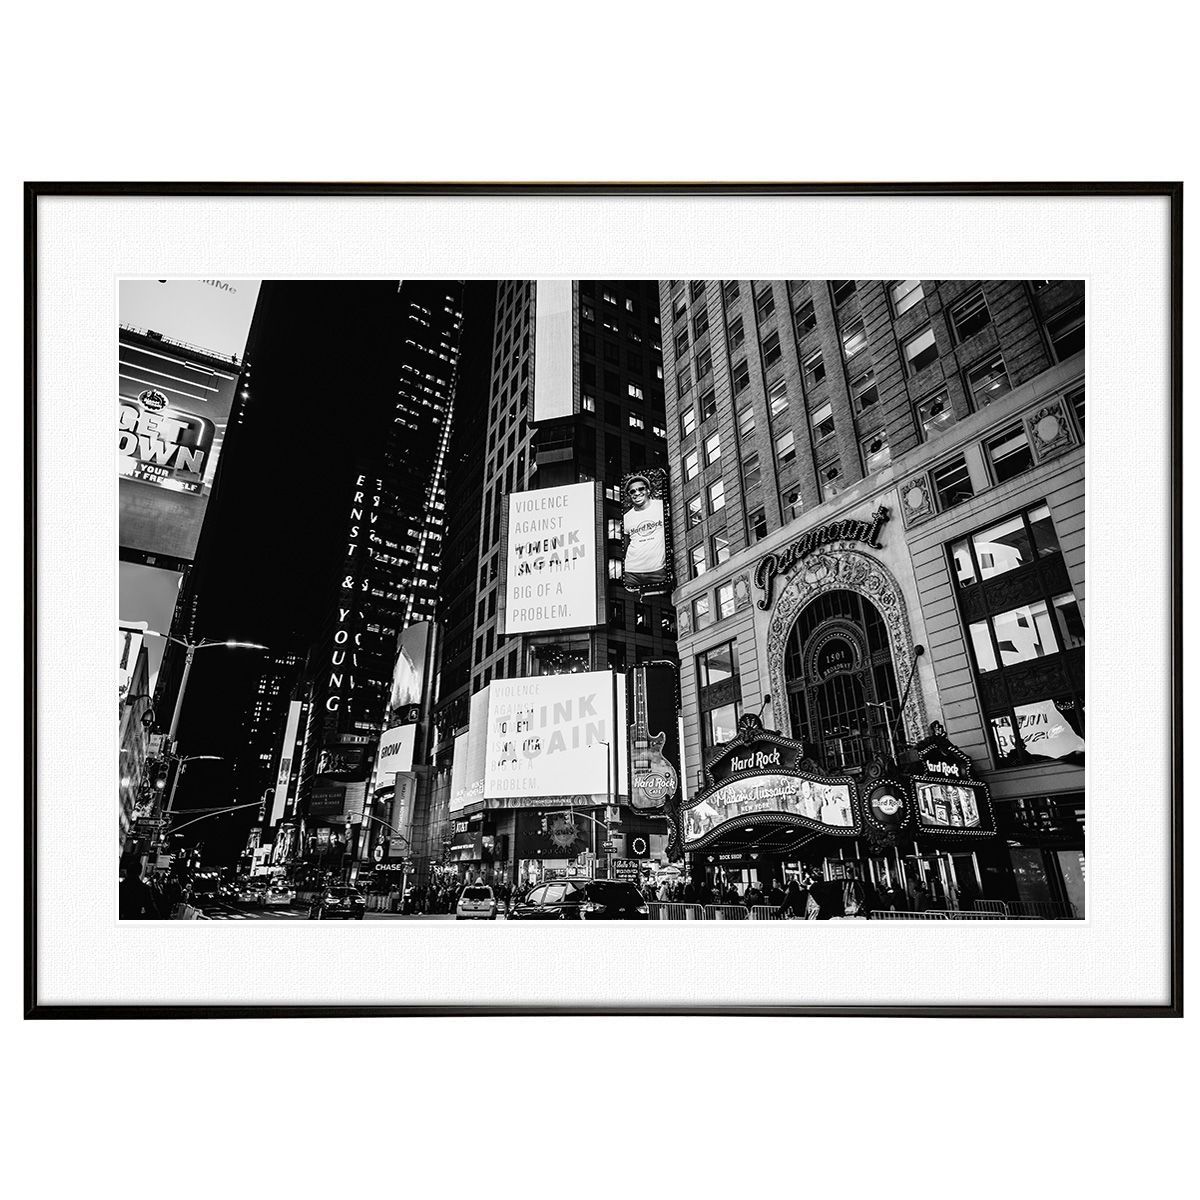 アメリカ写真 ニューヨーク タイムズ・スクエア インテリア モノクロ(モノトーン)アートポスター額装 AS1686 - メルカリ